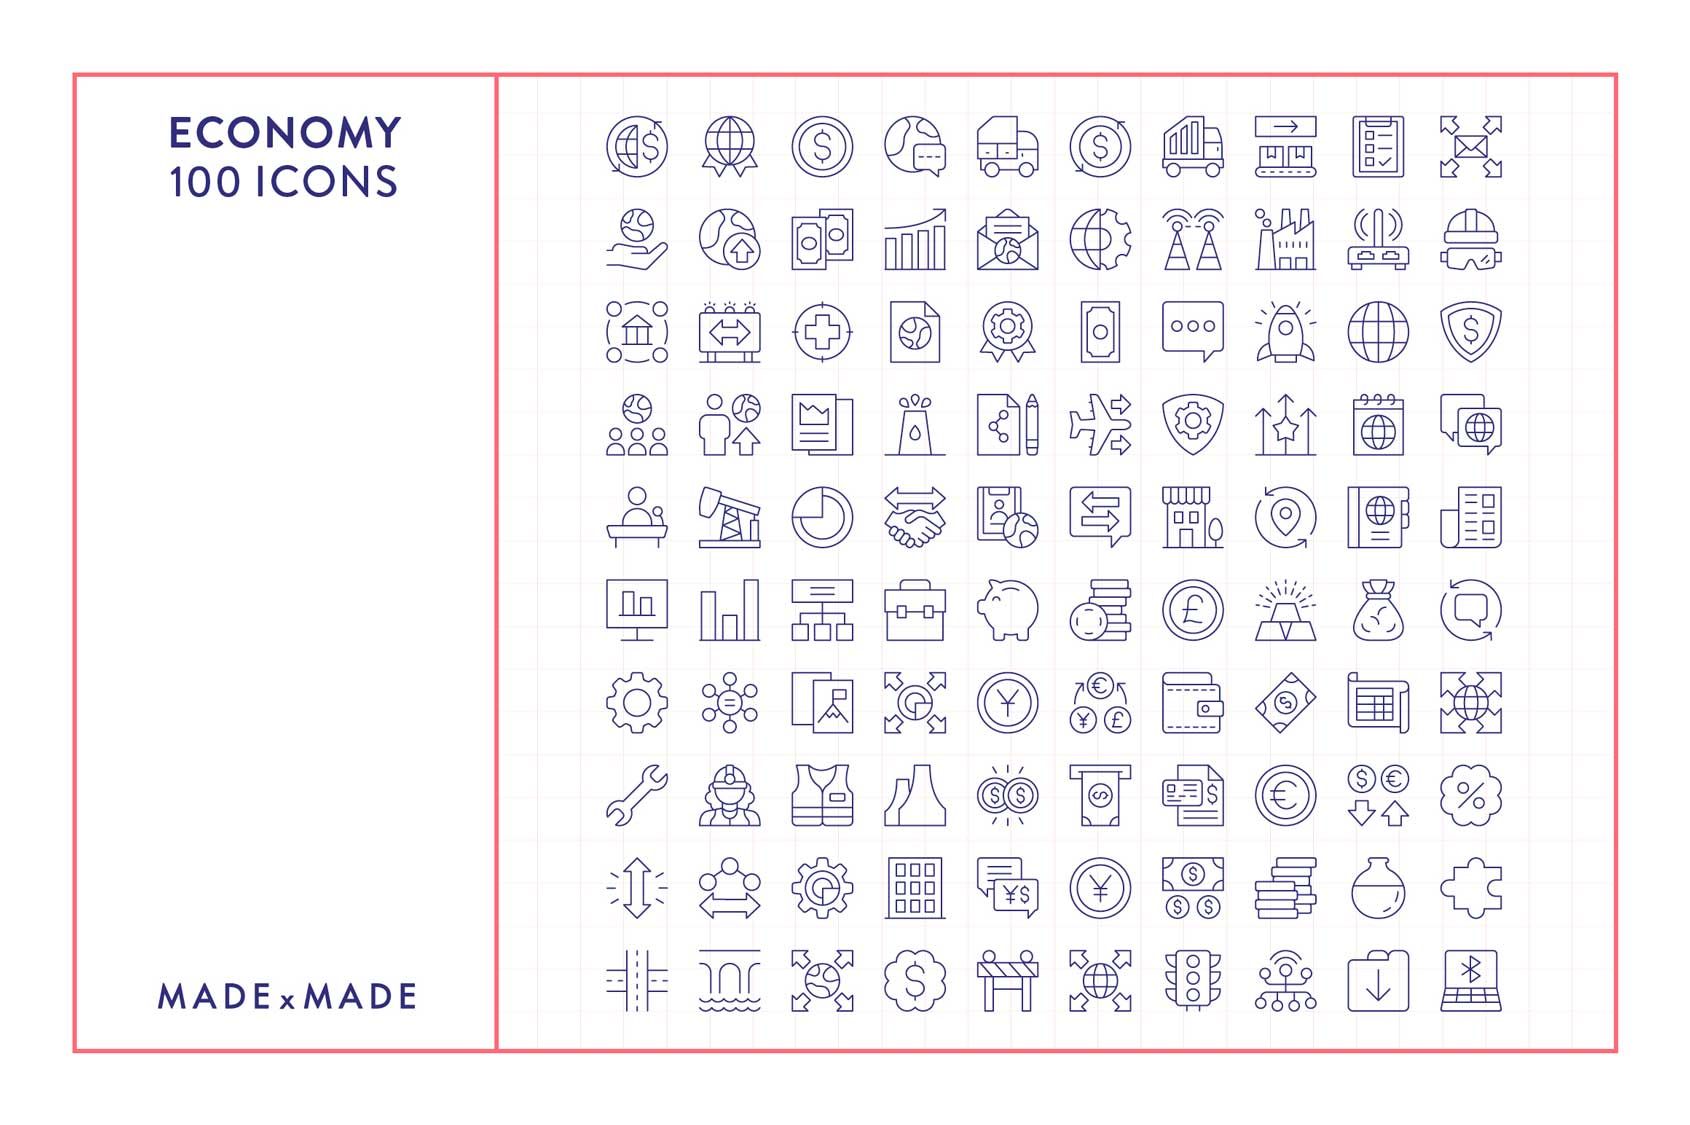 made x made icons economy